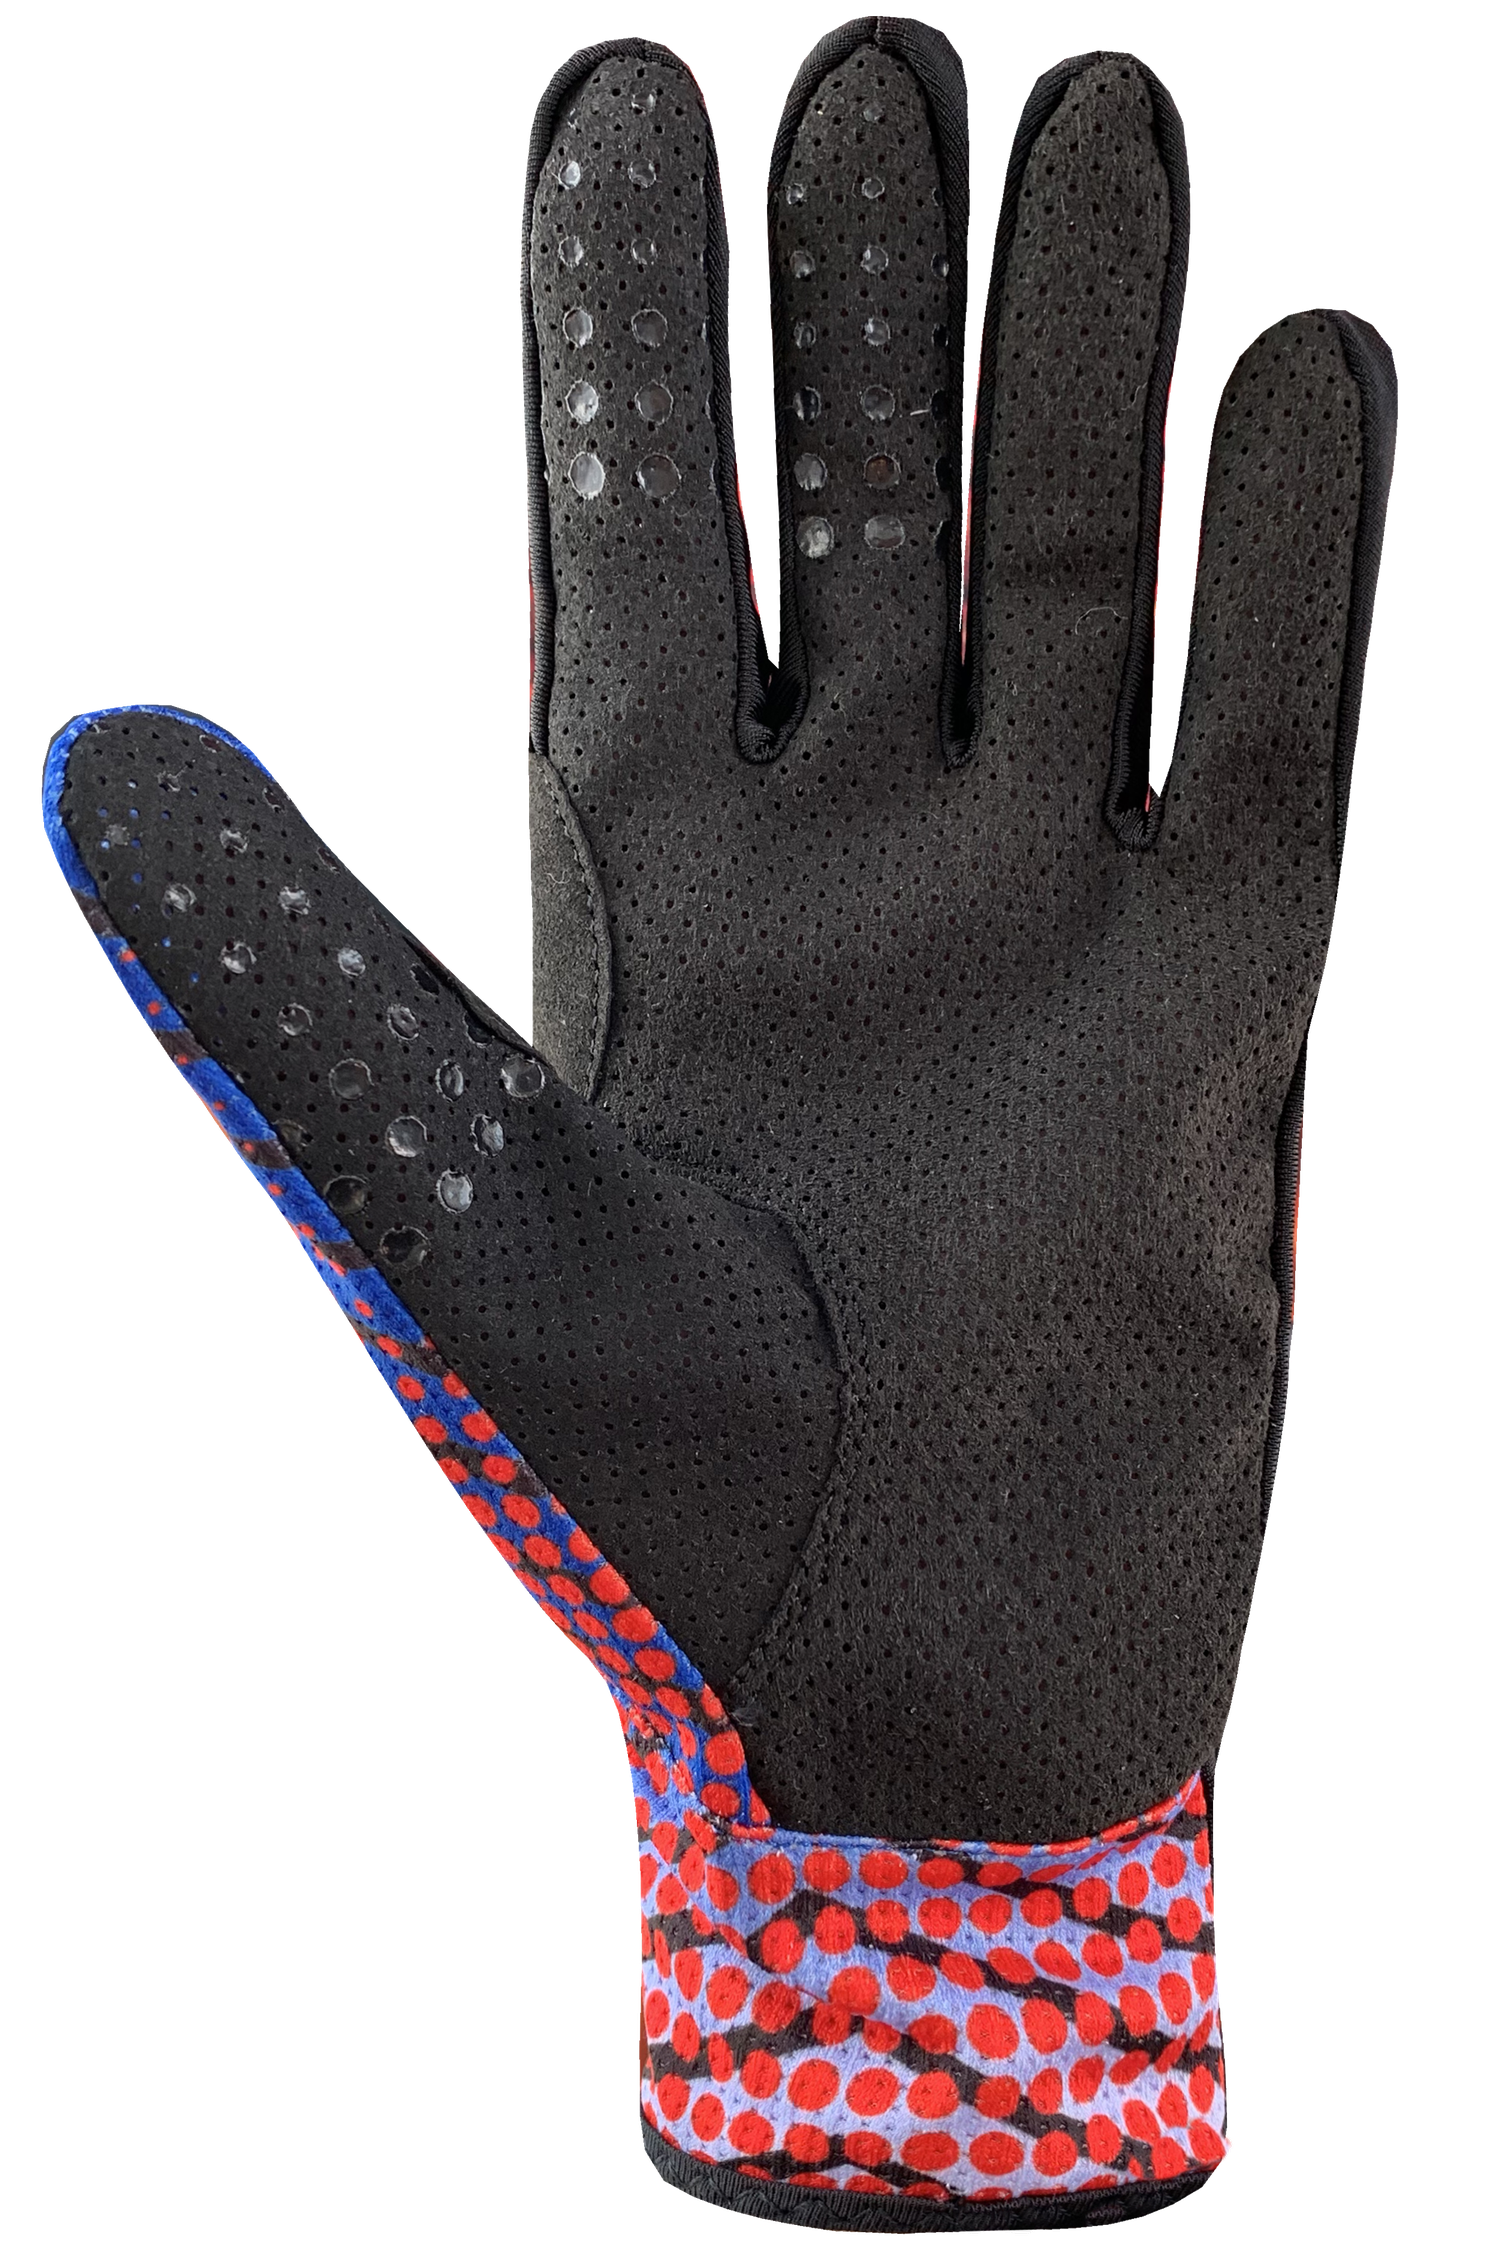 High Roller 2 Gloves - Adult, Black/Blue/Red